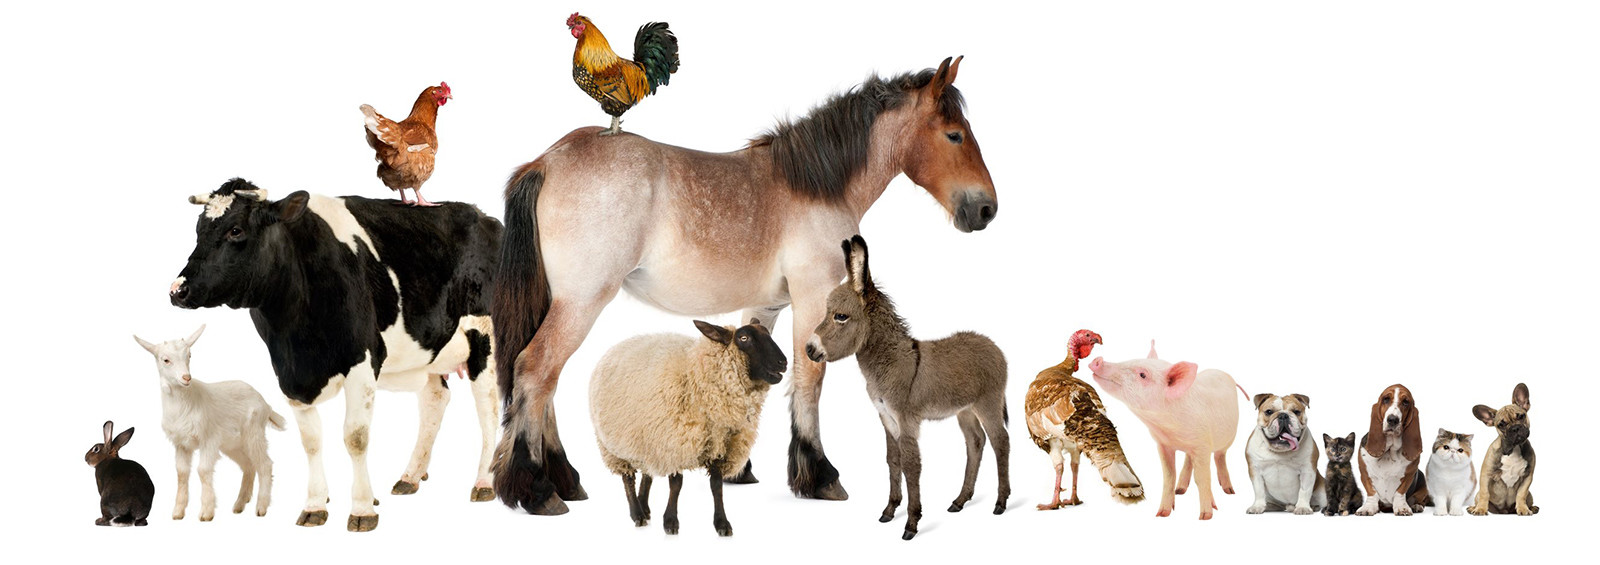 Résultat de recherche d'images pour "tout les animaux de la ferme"